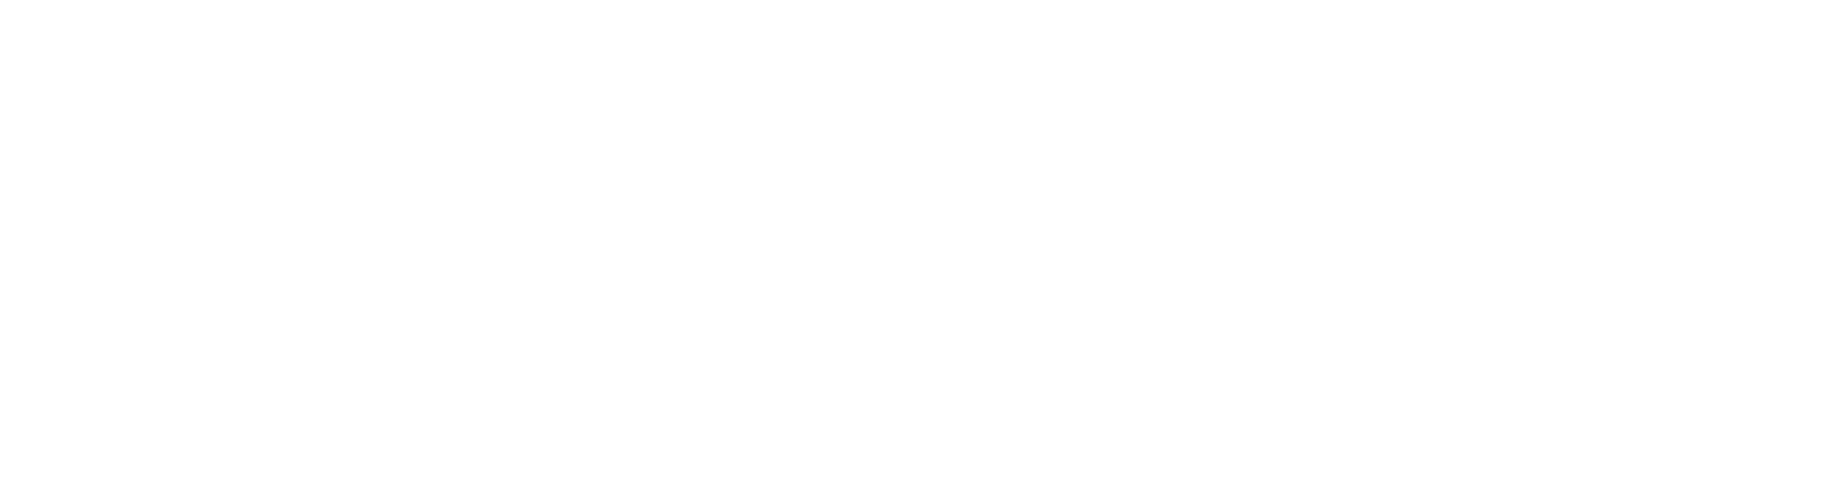 sshare page - dark